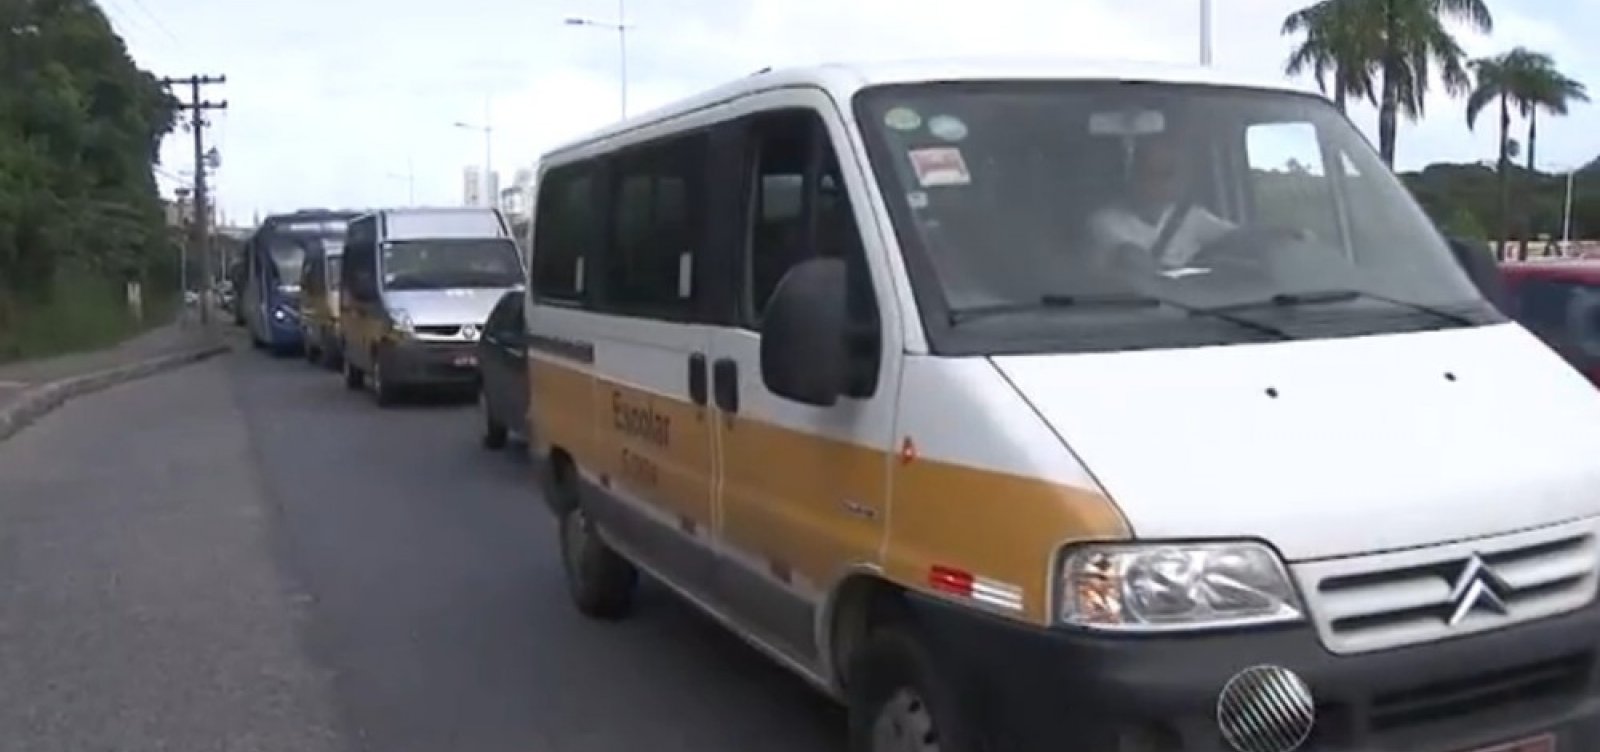 Inspeção de veículos de transporte escolar em Salvador começa 16 de março